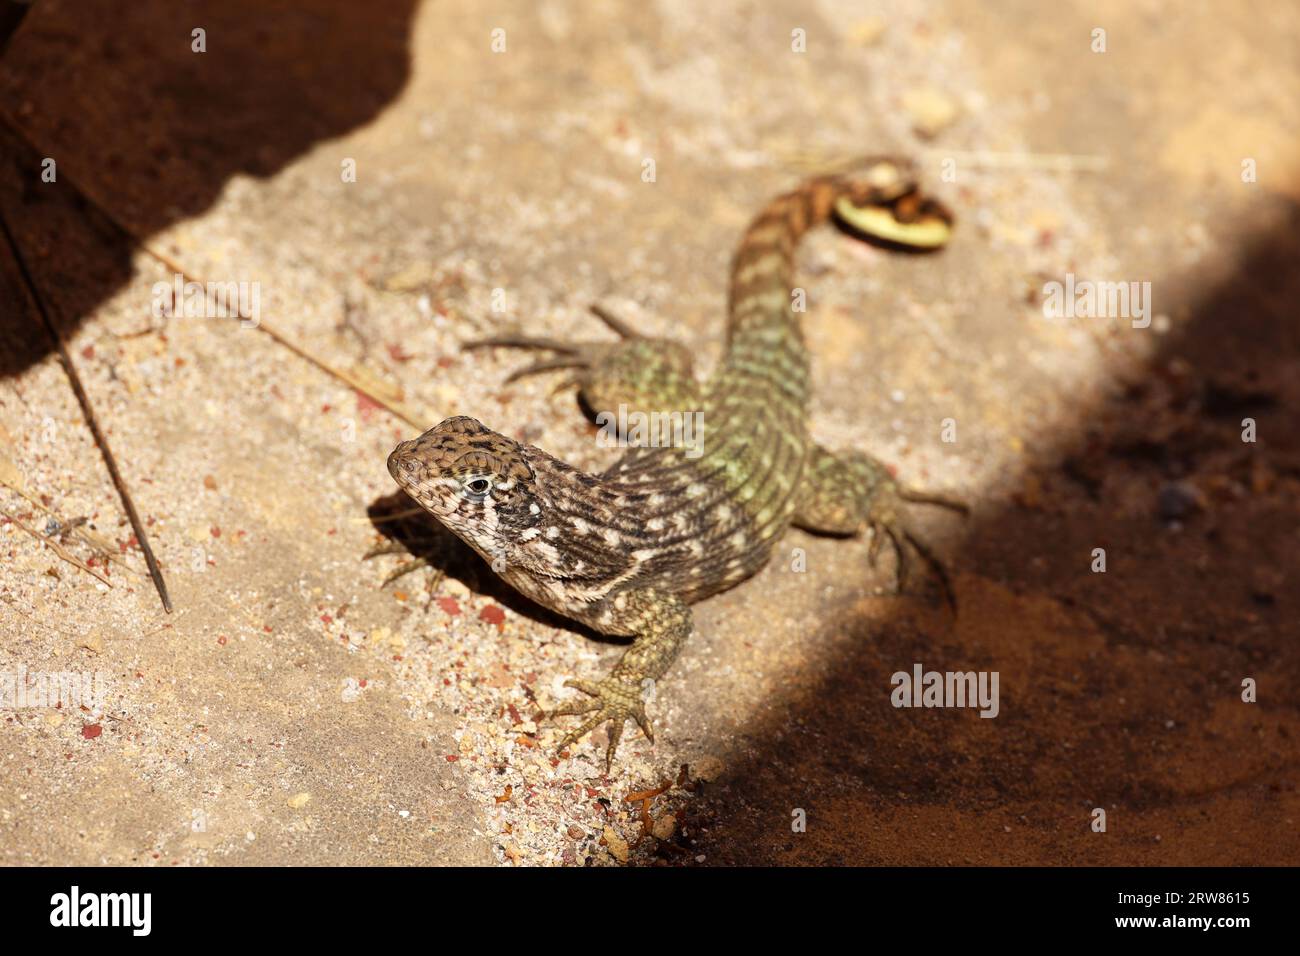 Porträt der Northern Curly tail Lizard, die auf einem Stein sitzt. Leguan Leiocephalus carinatus Stockfoto